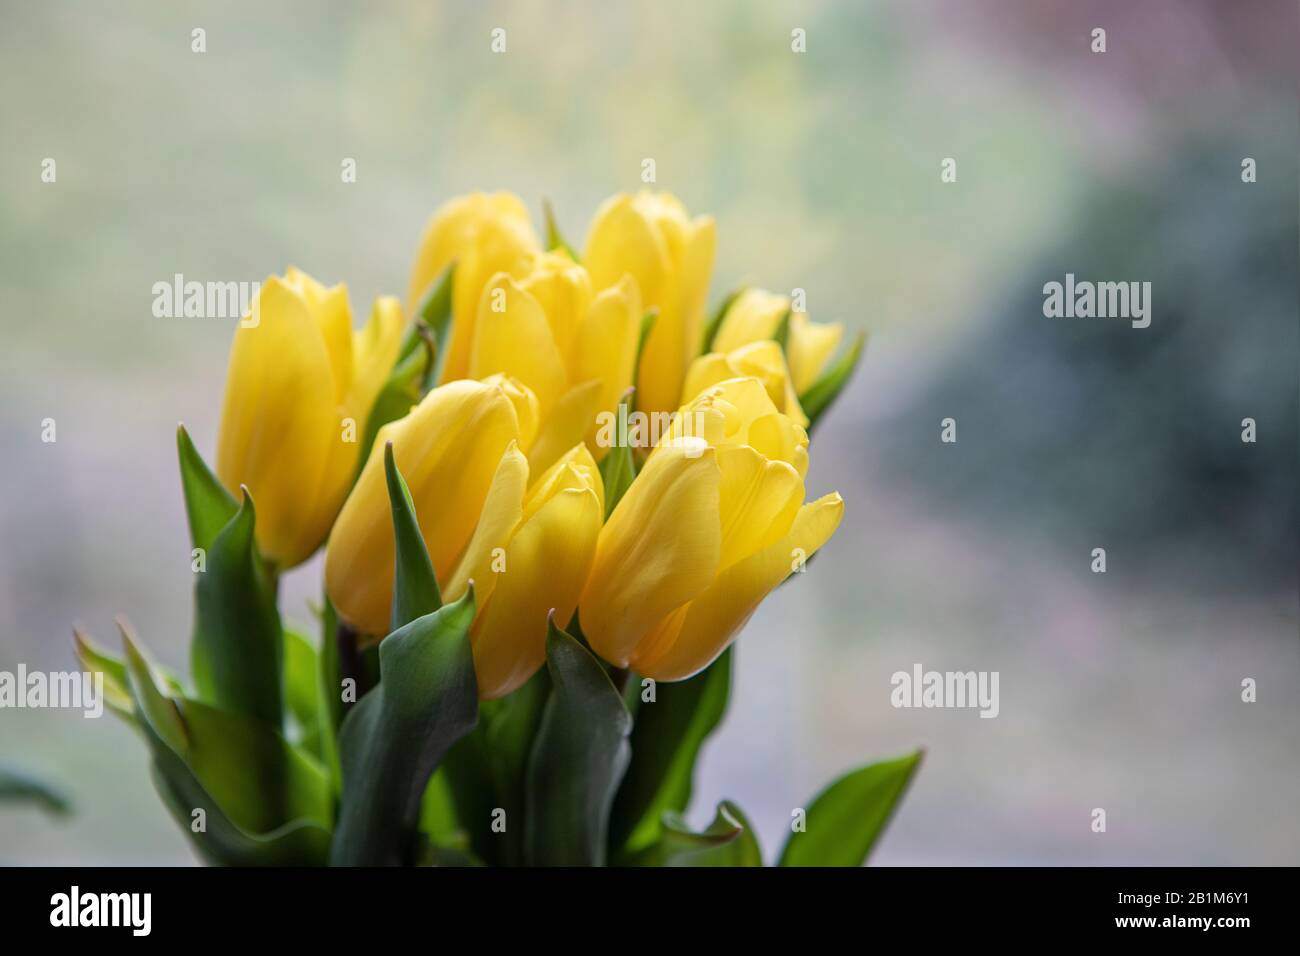 Romantischer Frühlings-Blumenstrauß. Gelbe Tulpen auf hellem, unschärfem Hintergrund, Hausdekor. Kopierbereich. Frühlingsstimmung. Stockfoto